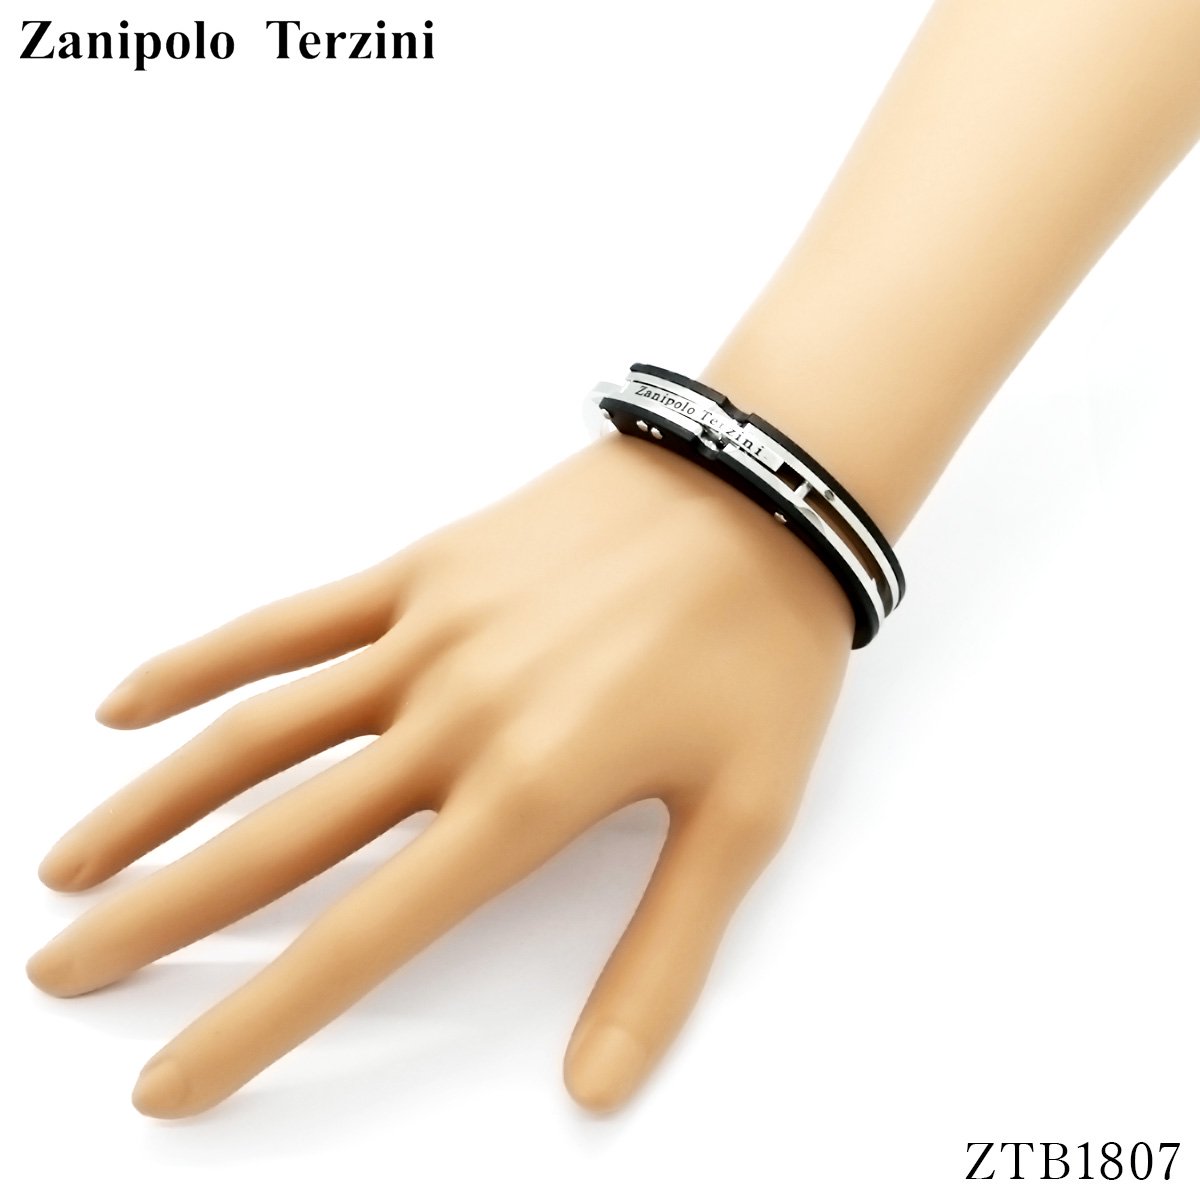 手錠型 ブレスレット ザニポロタルツィーニ Zanipolo Terzini